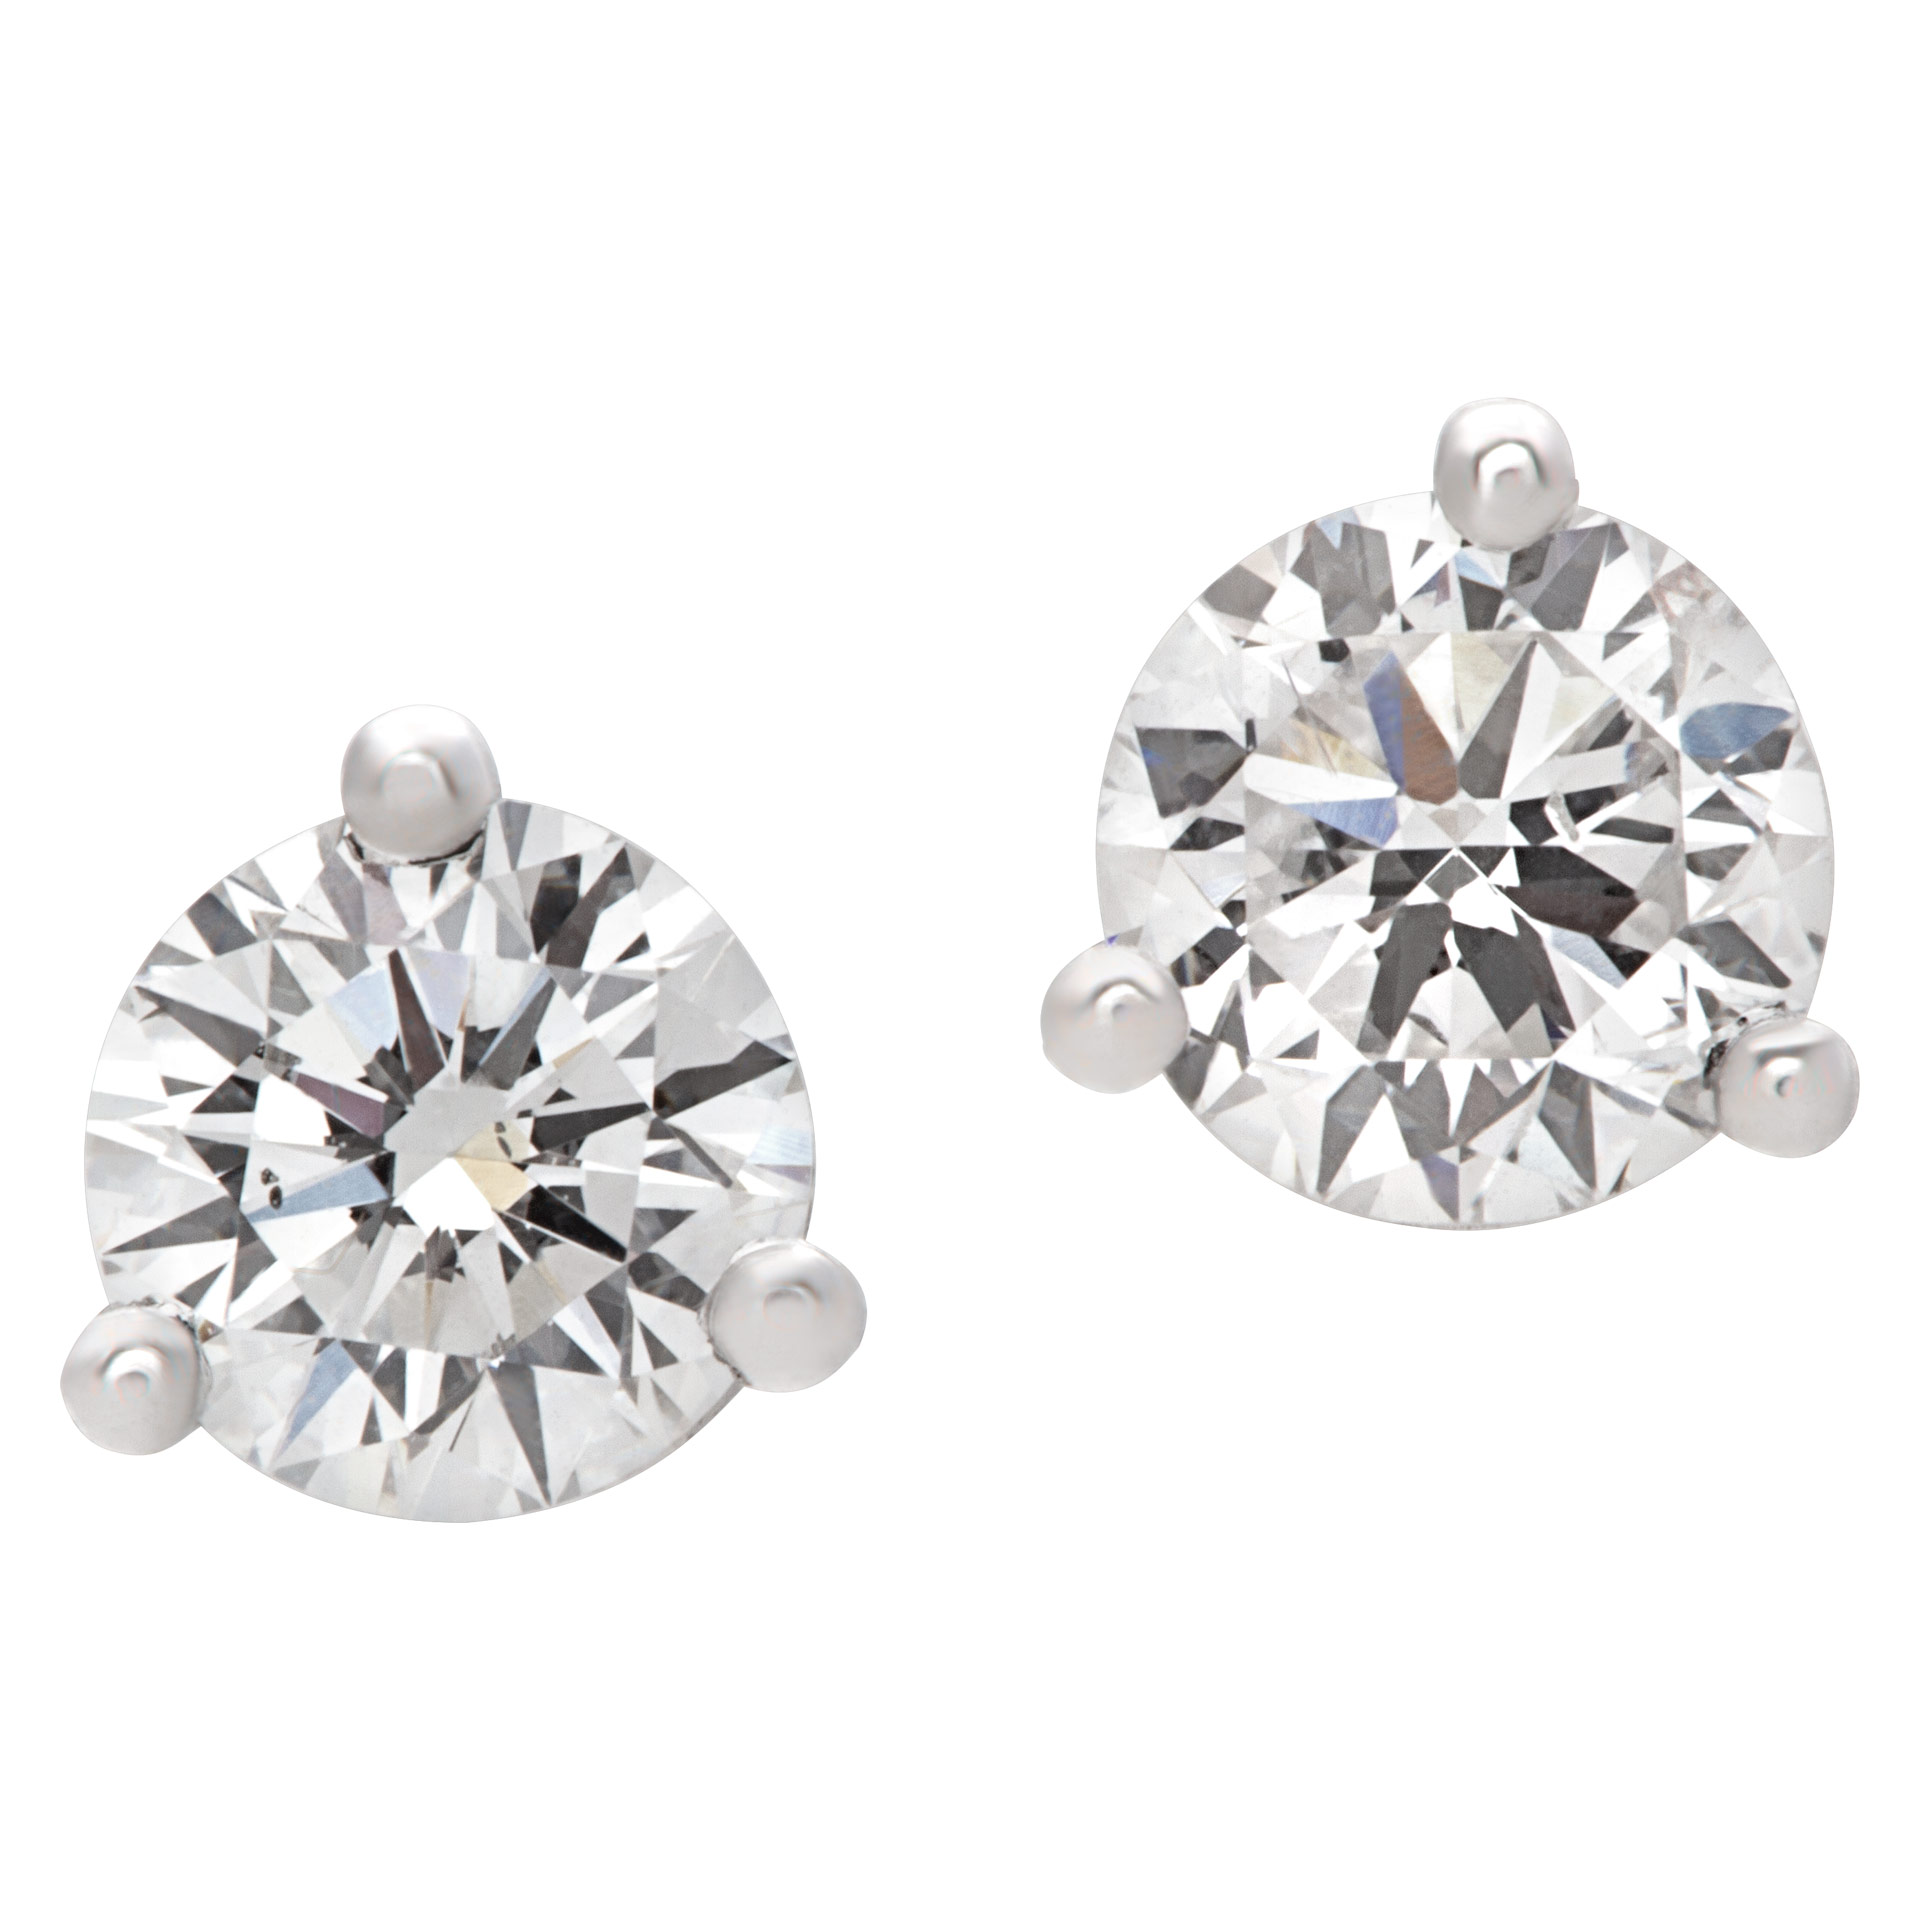 GIA certified diamond studs 0.32 carat (E color, SI1 clarity) and 0.35 carat (F color, SI2 clarity) image 1